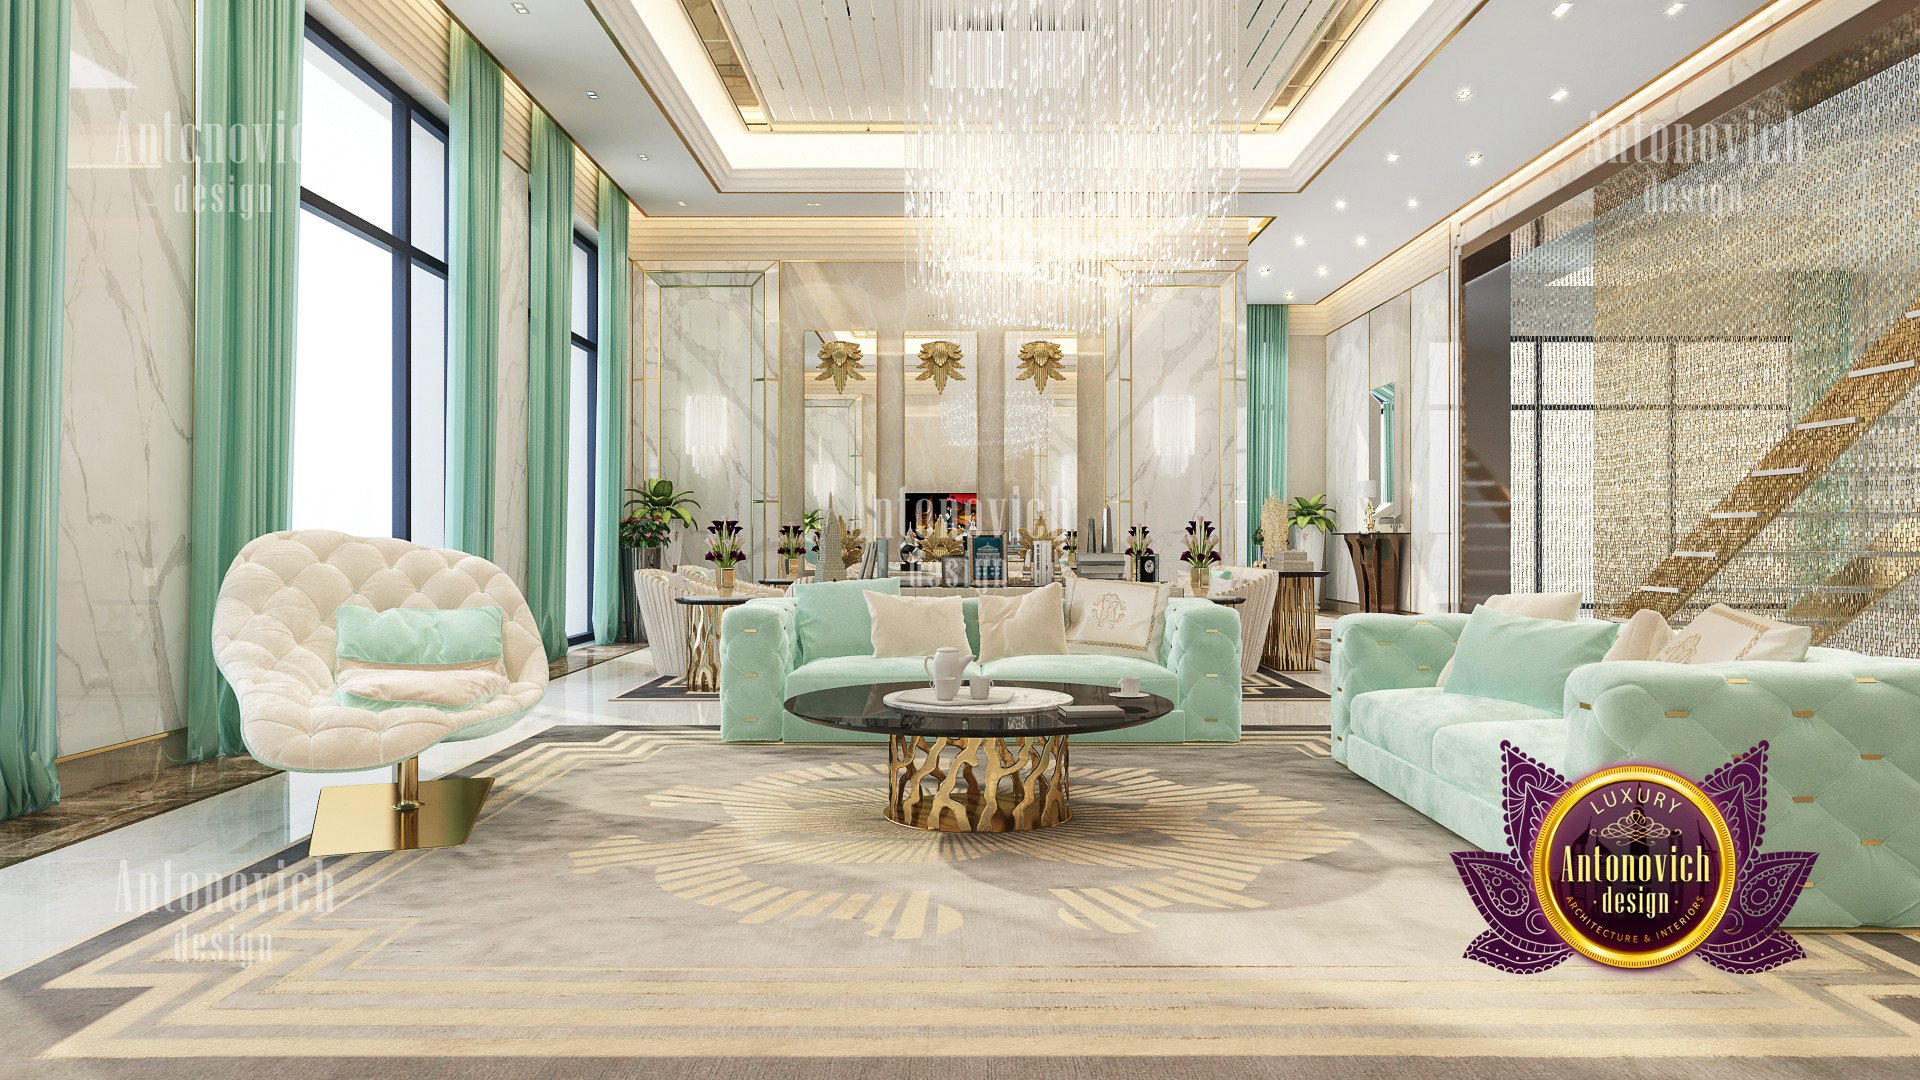 Amazing Luxury Villa Designs in San Francisco
